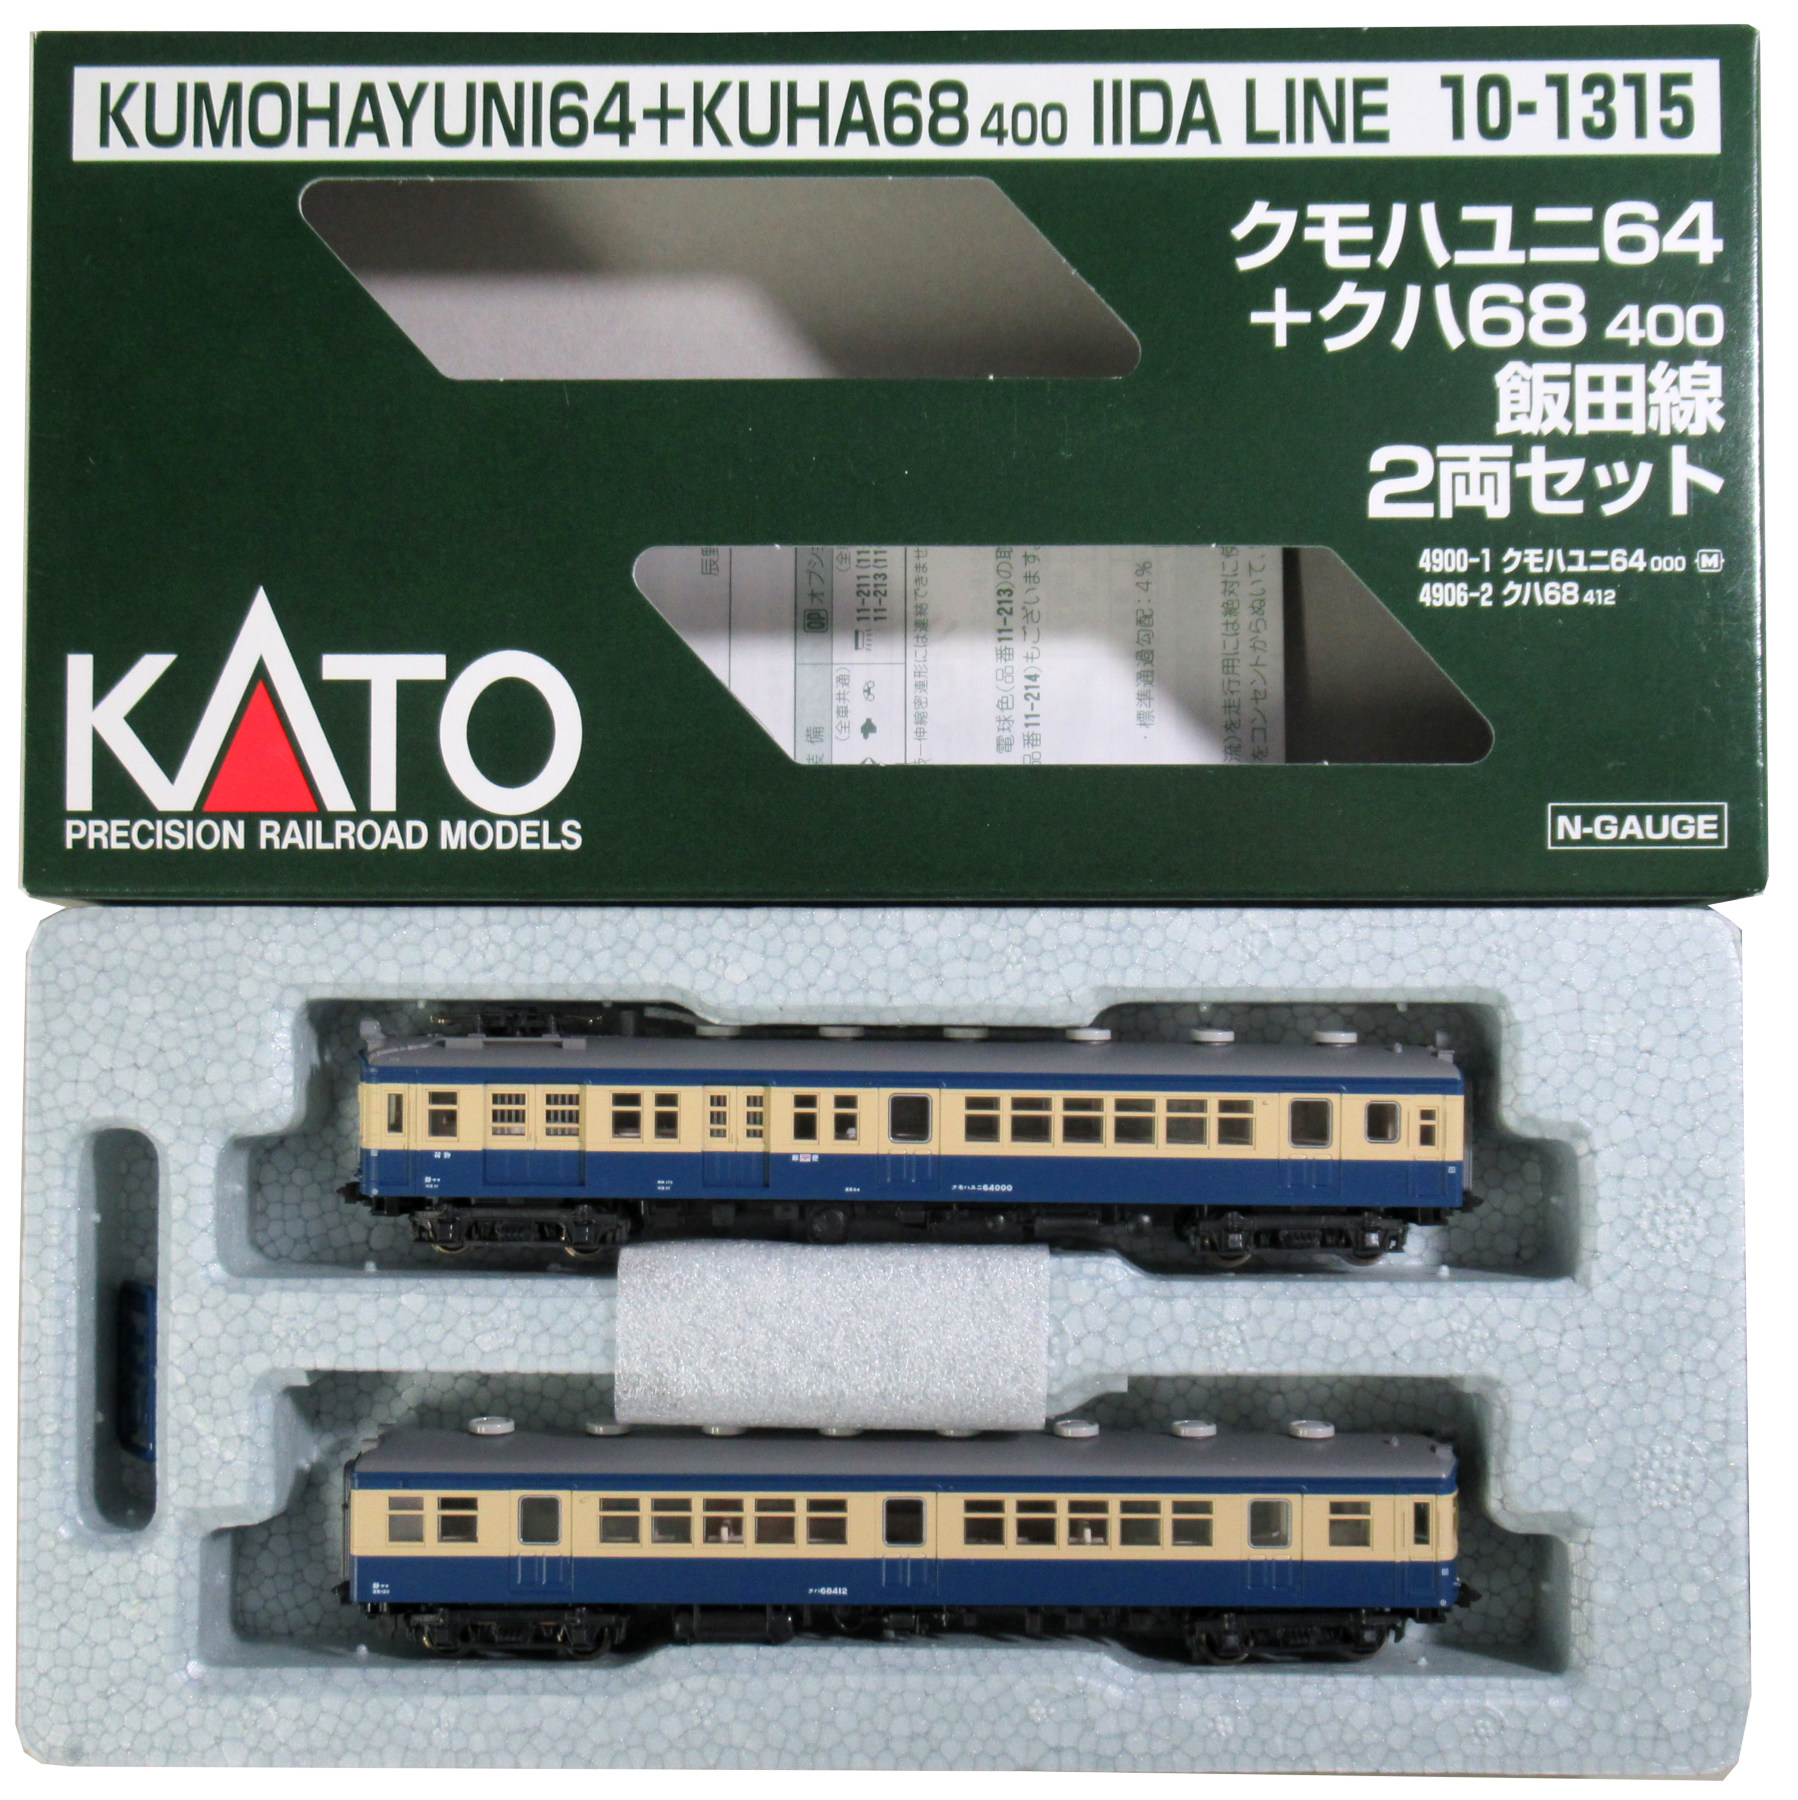 カトー 10-1315 クモハユニ64+クハ68400 飯田線 2両セット - 模型 